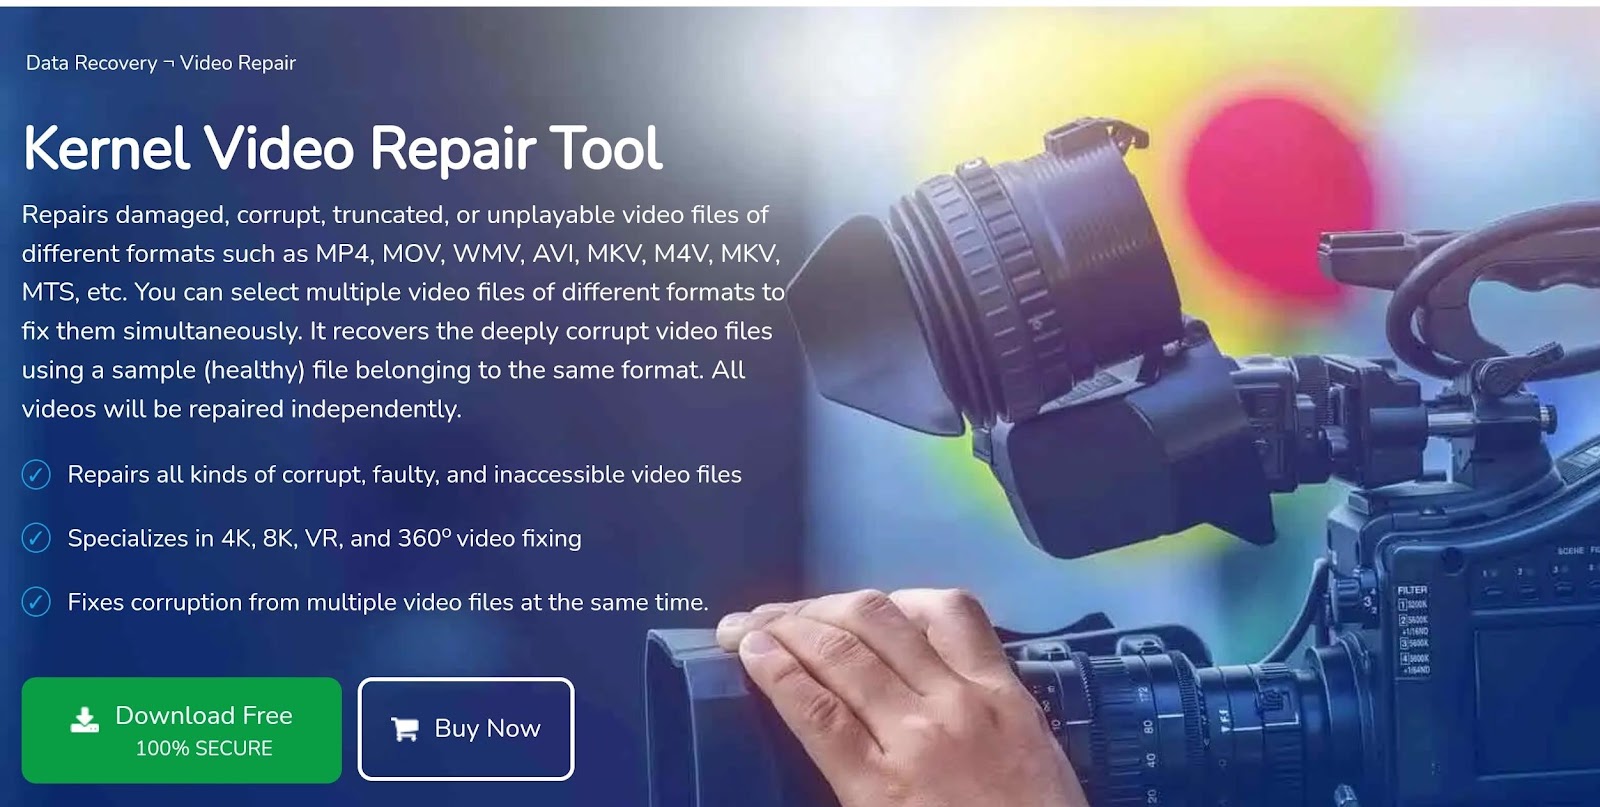 the homepage of Kernel Video Repair Tool